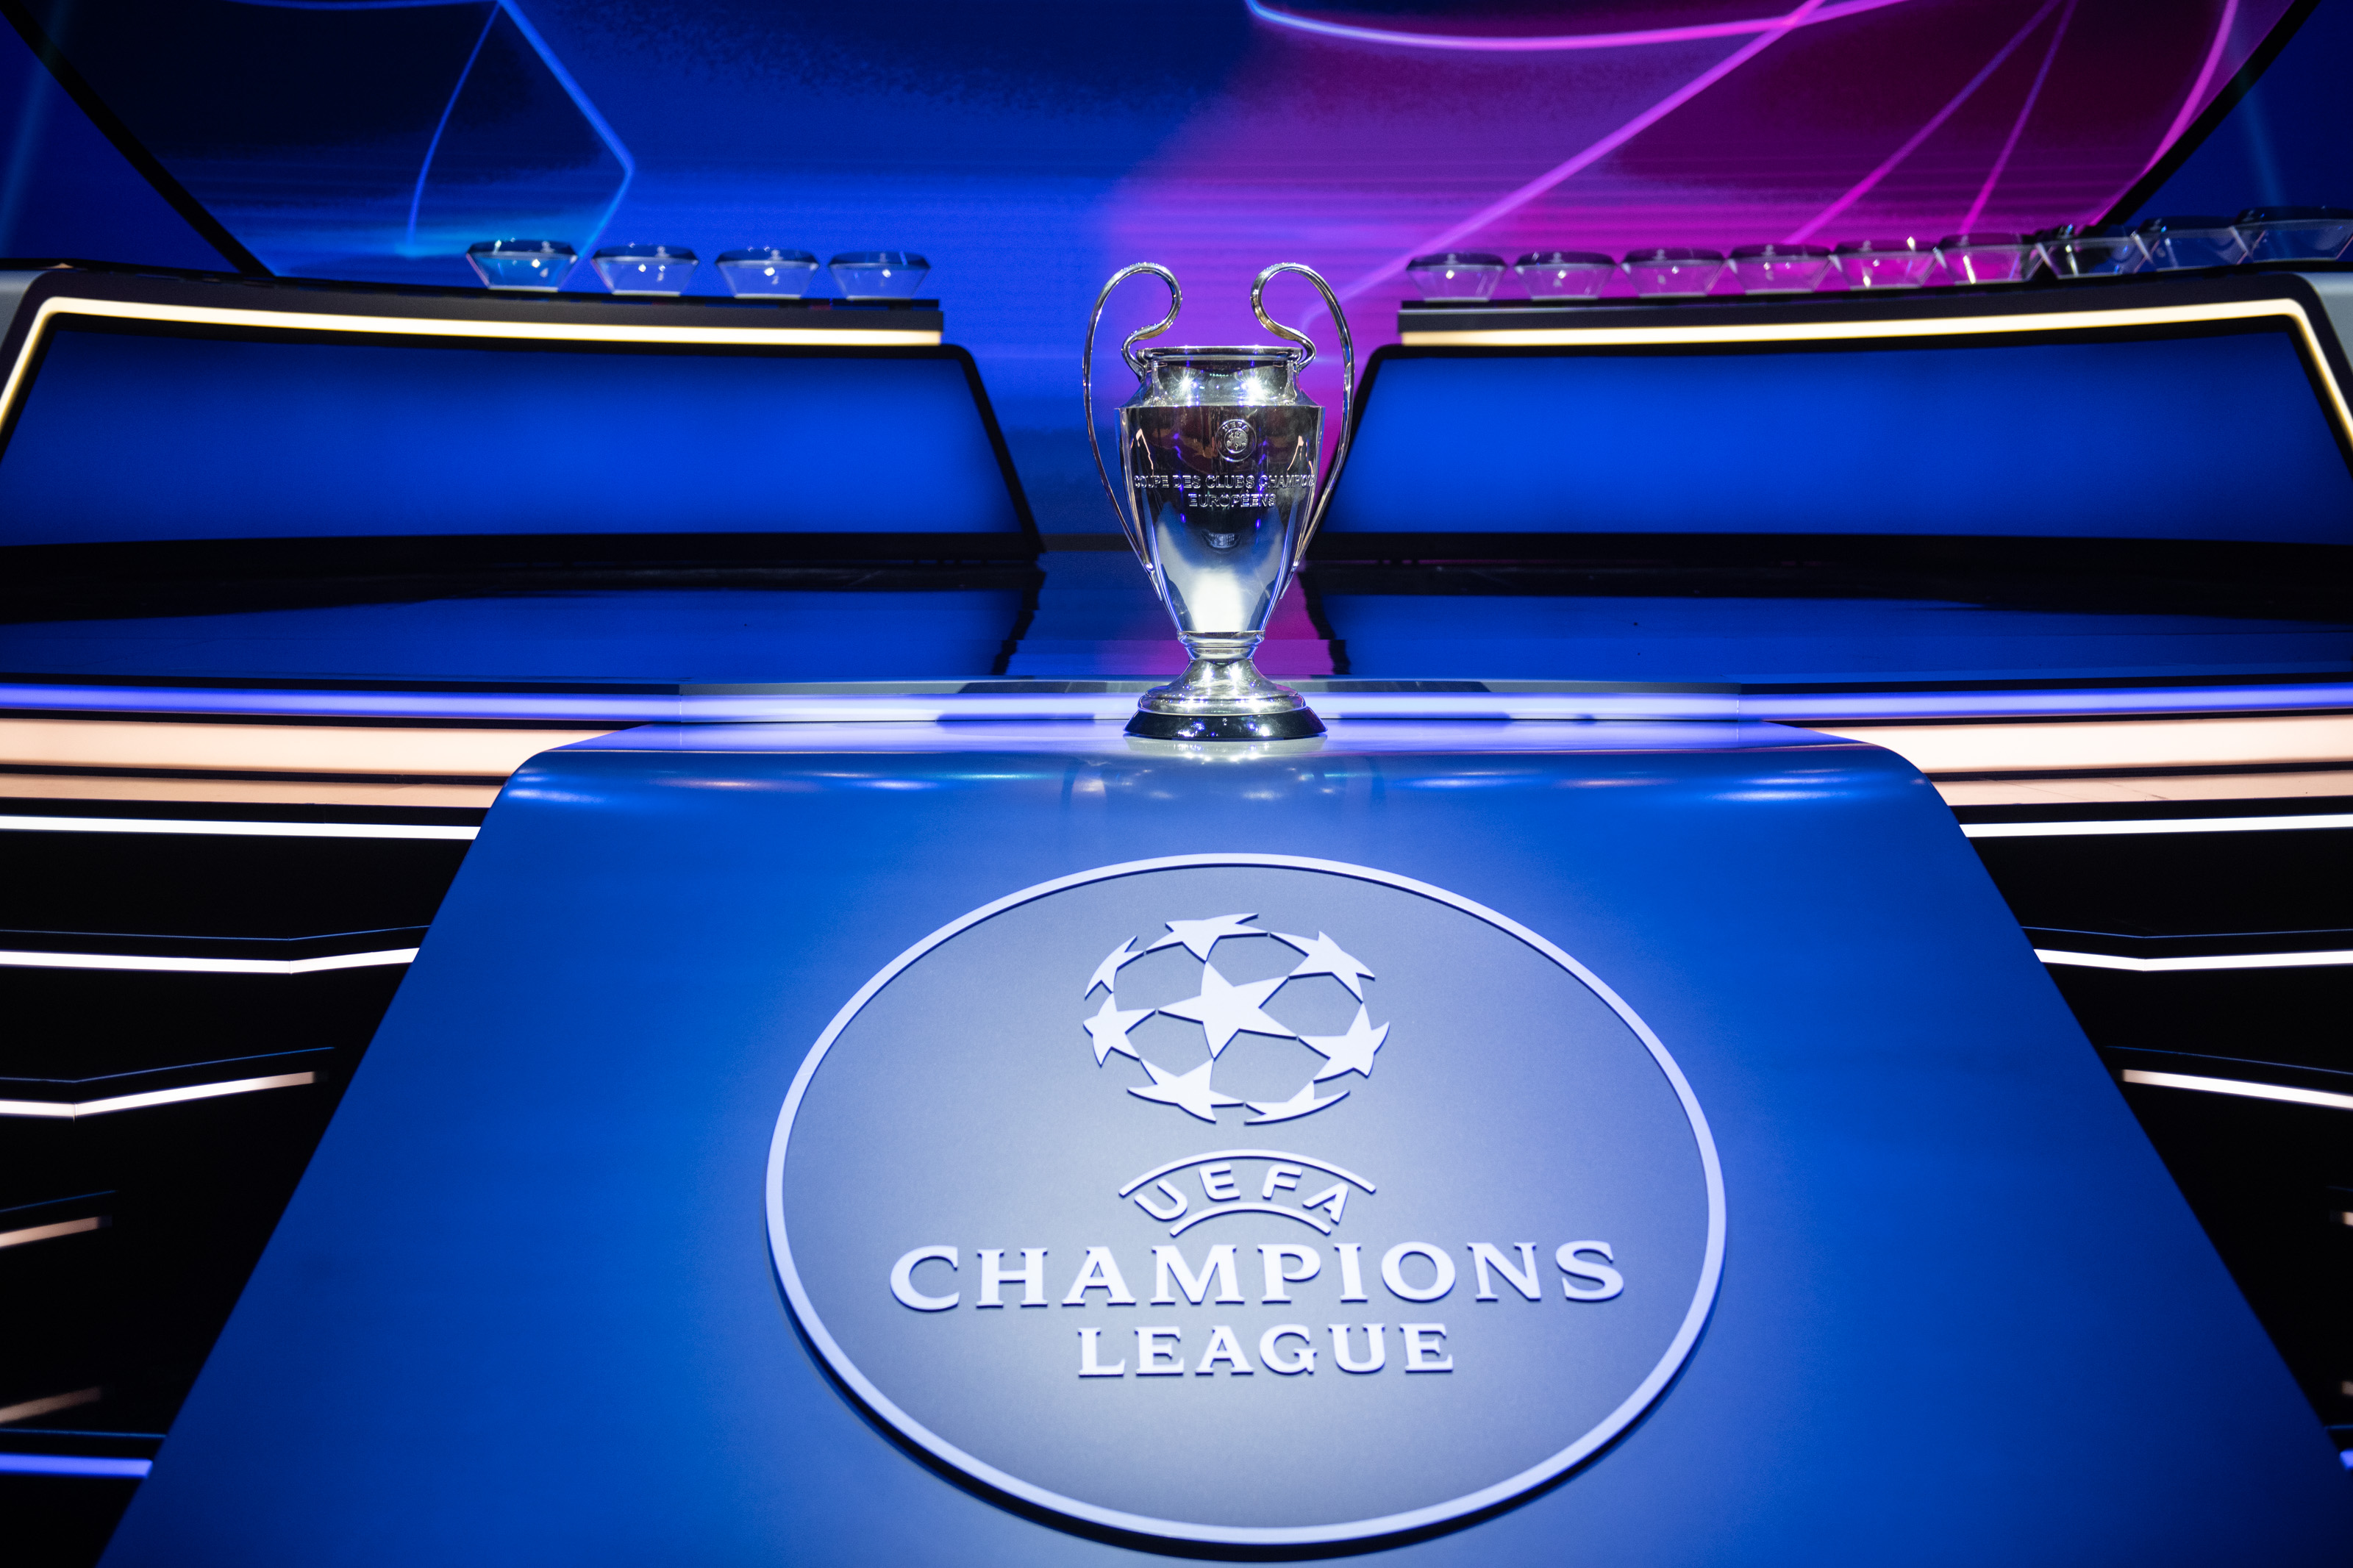 2021 jadual ucl UEFA Champions